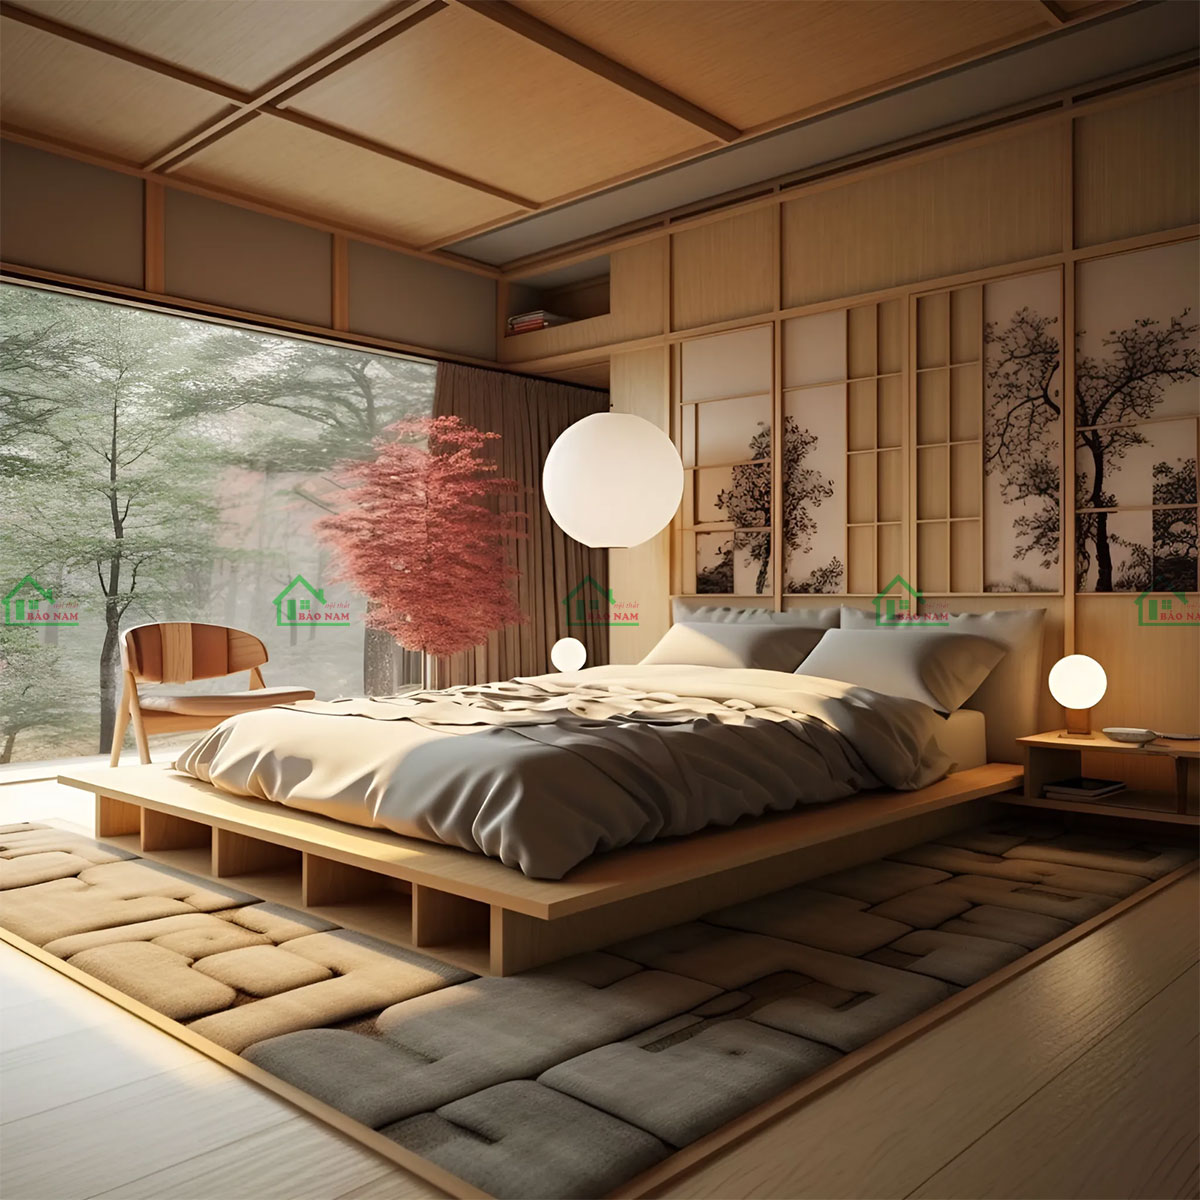 Giường phản gỗ tự nhiên cao cấp, sang trọng